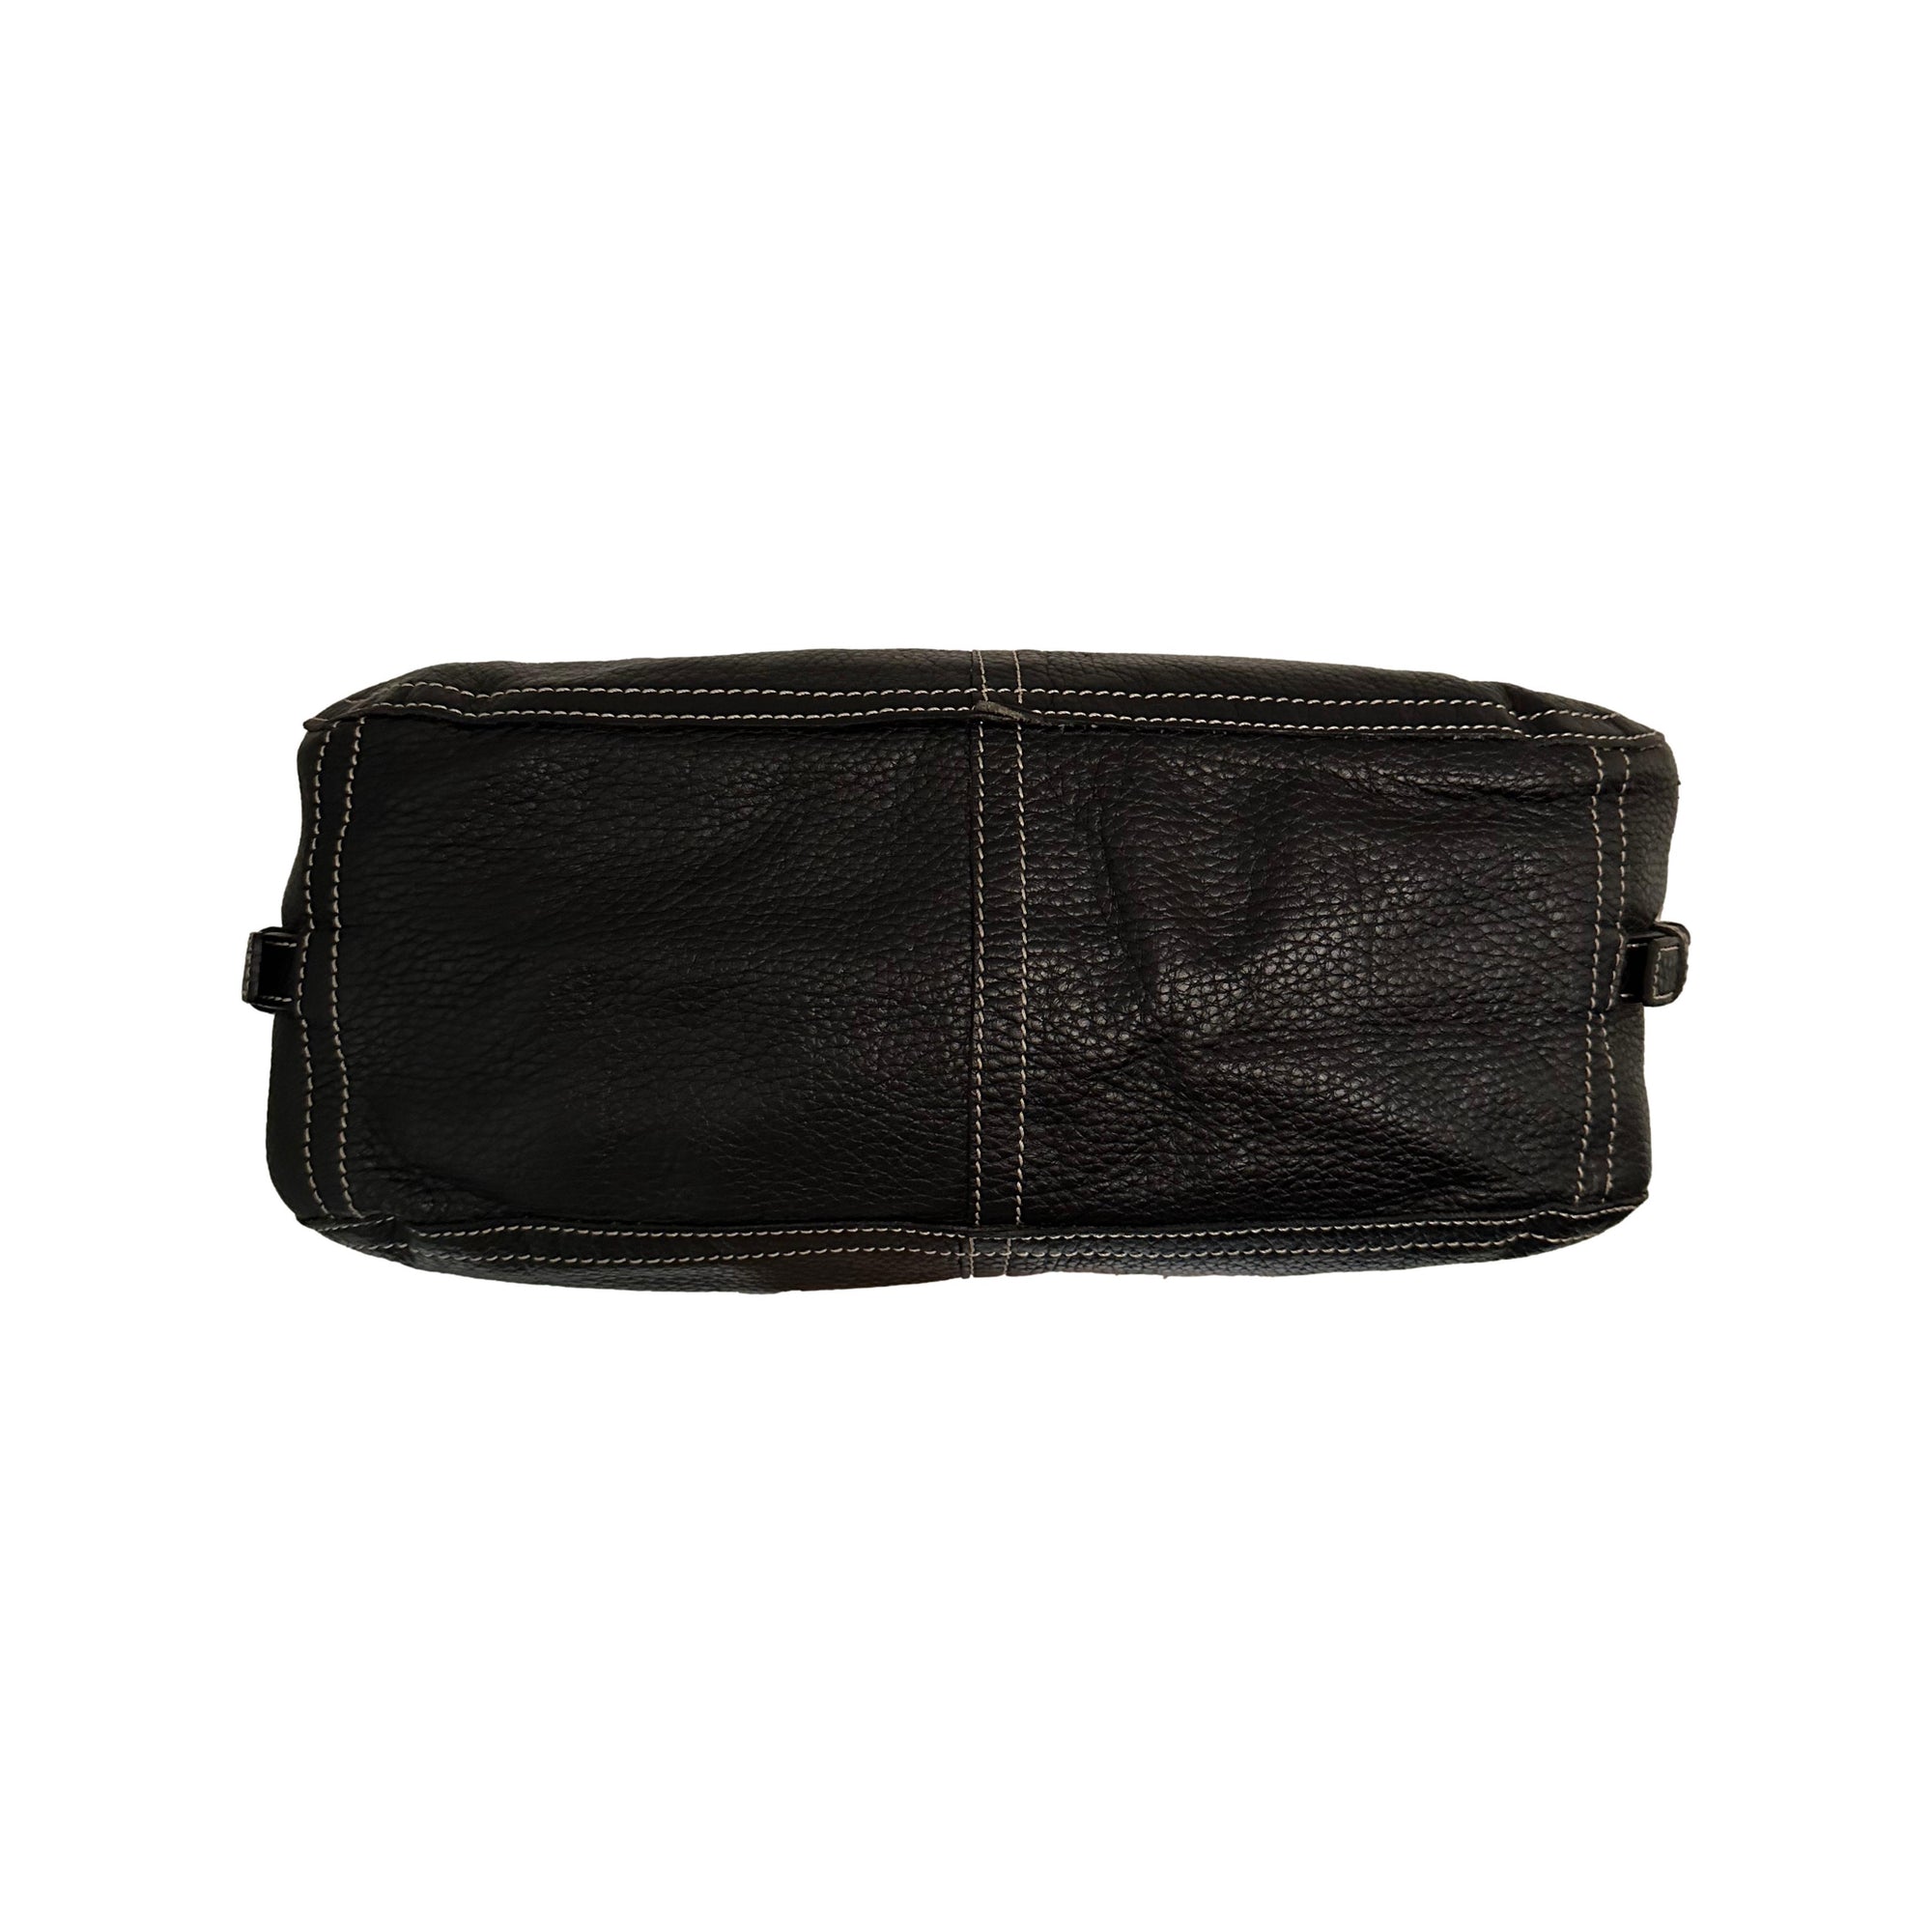 Prada Black Leather Pocket Shoulder Bag